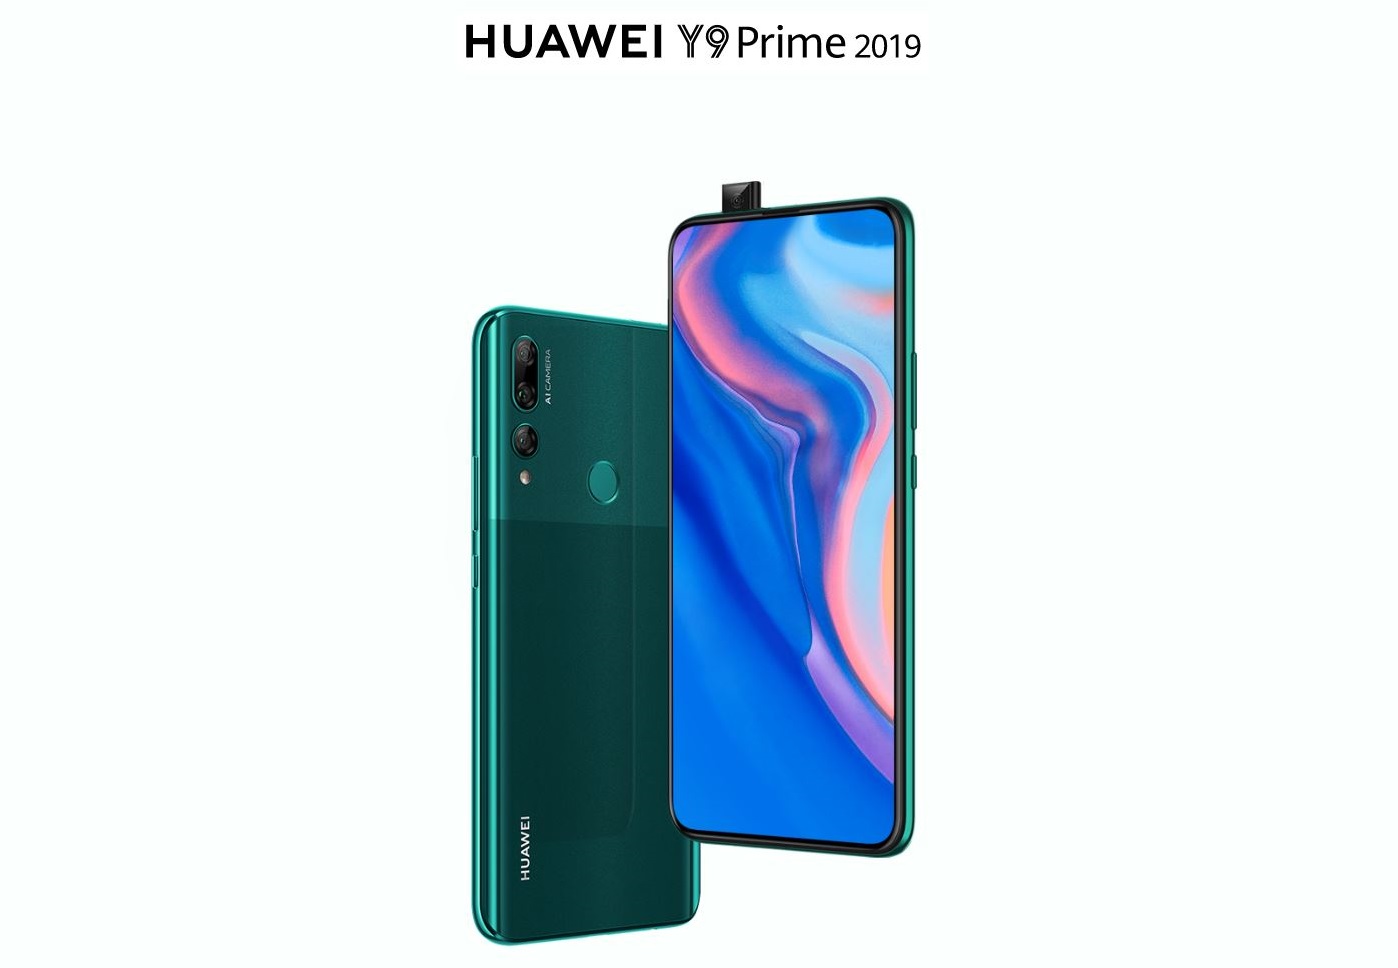 וואווי משיקה בישראל את ה-Huawei Y9 Prime 2019